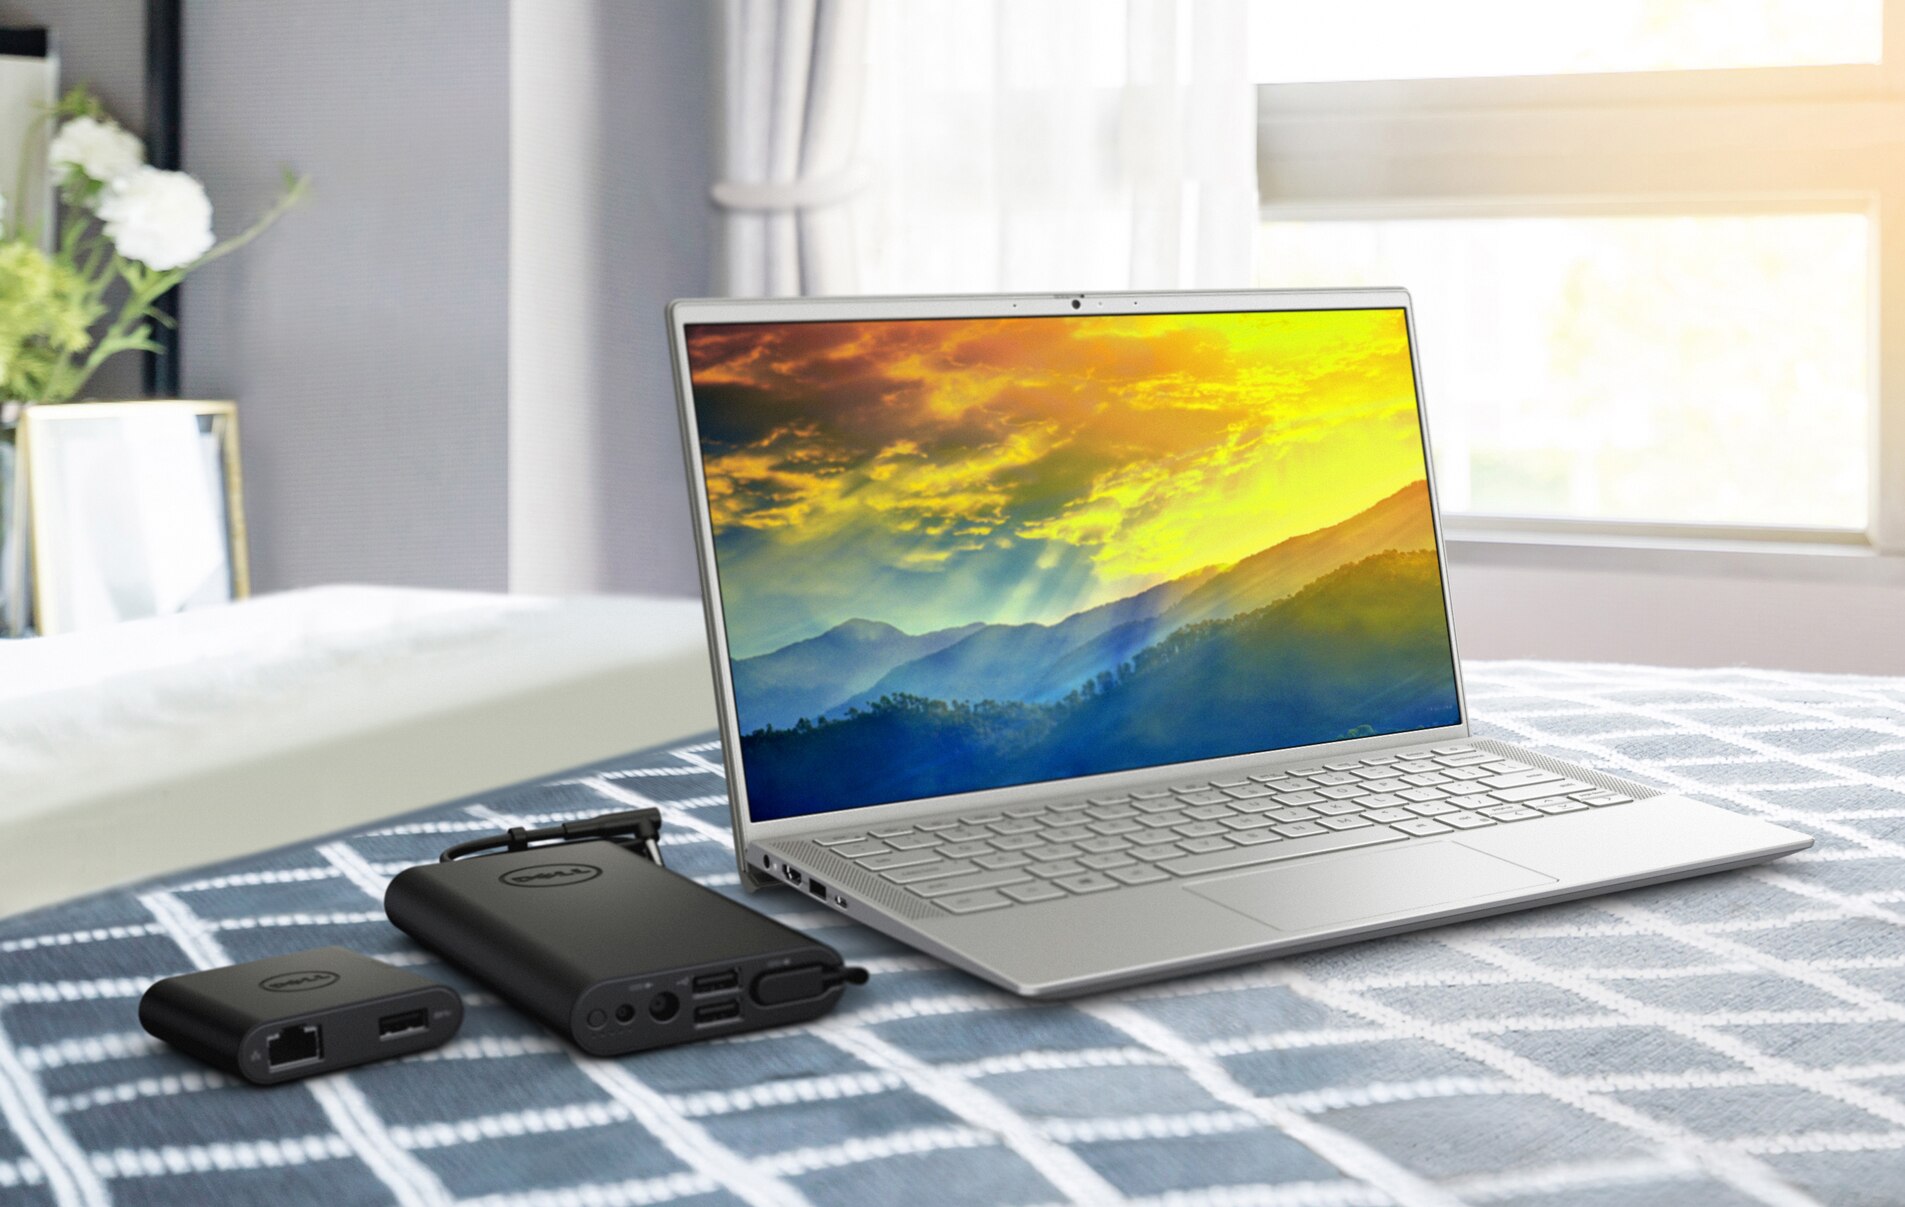 Bild eines Dell Laptops mit einem farbigen Hintergrund auf dem Bildschirm und Akkuladegeräten neben dem Produkt